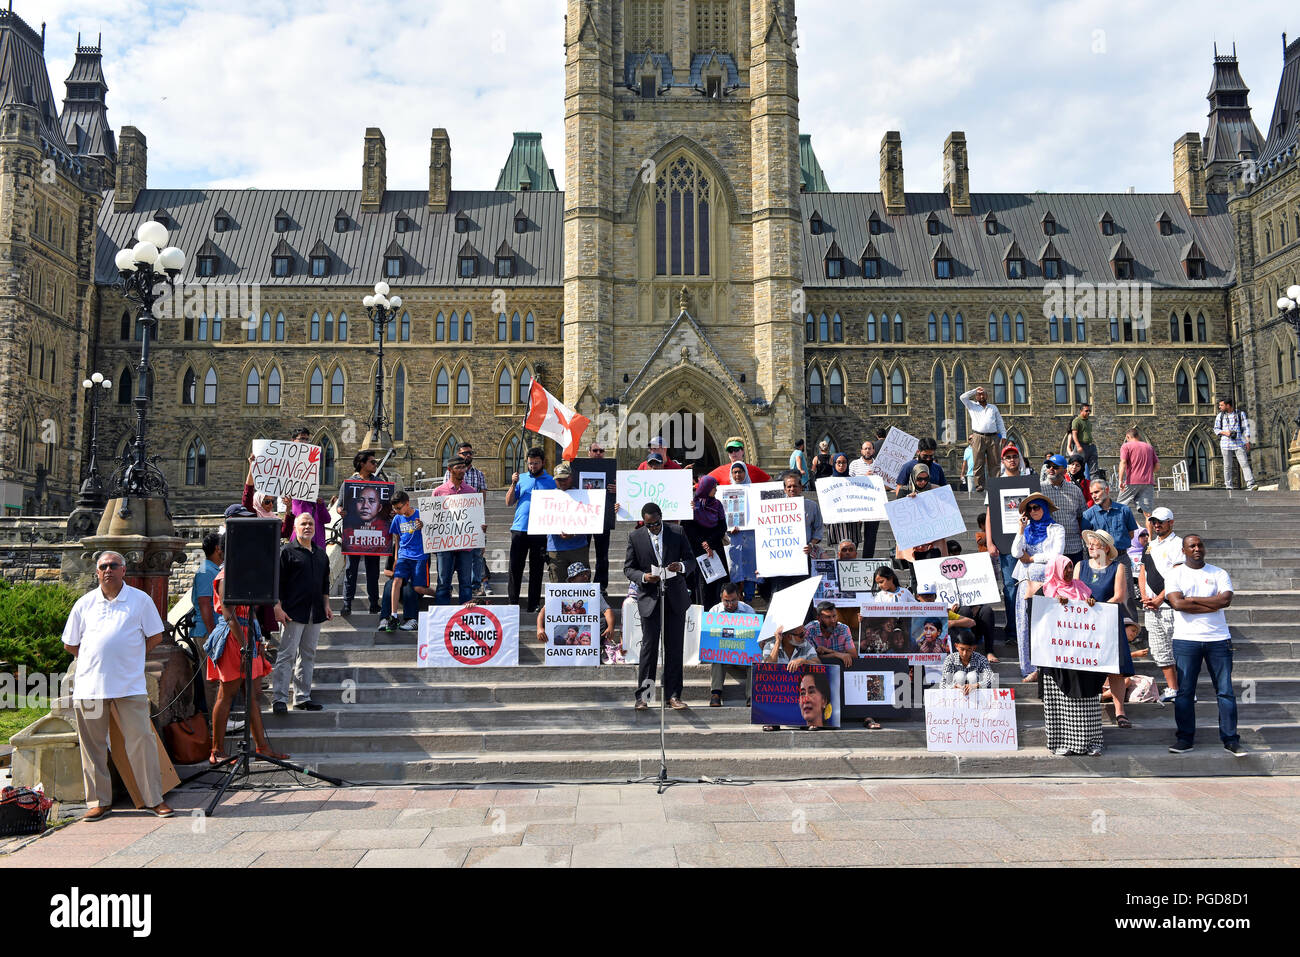 Ottawa, Kanada - 25. August 2018: eine Menschenmenge sammelt auf dem Parlamentshügel zu markieren, um den Jahrestag der Myanmar Durchgreifen auf die Rohingya Bevölkerung Protest und. Stockfoto